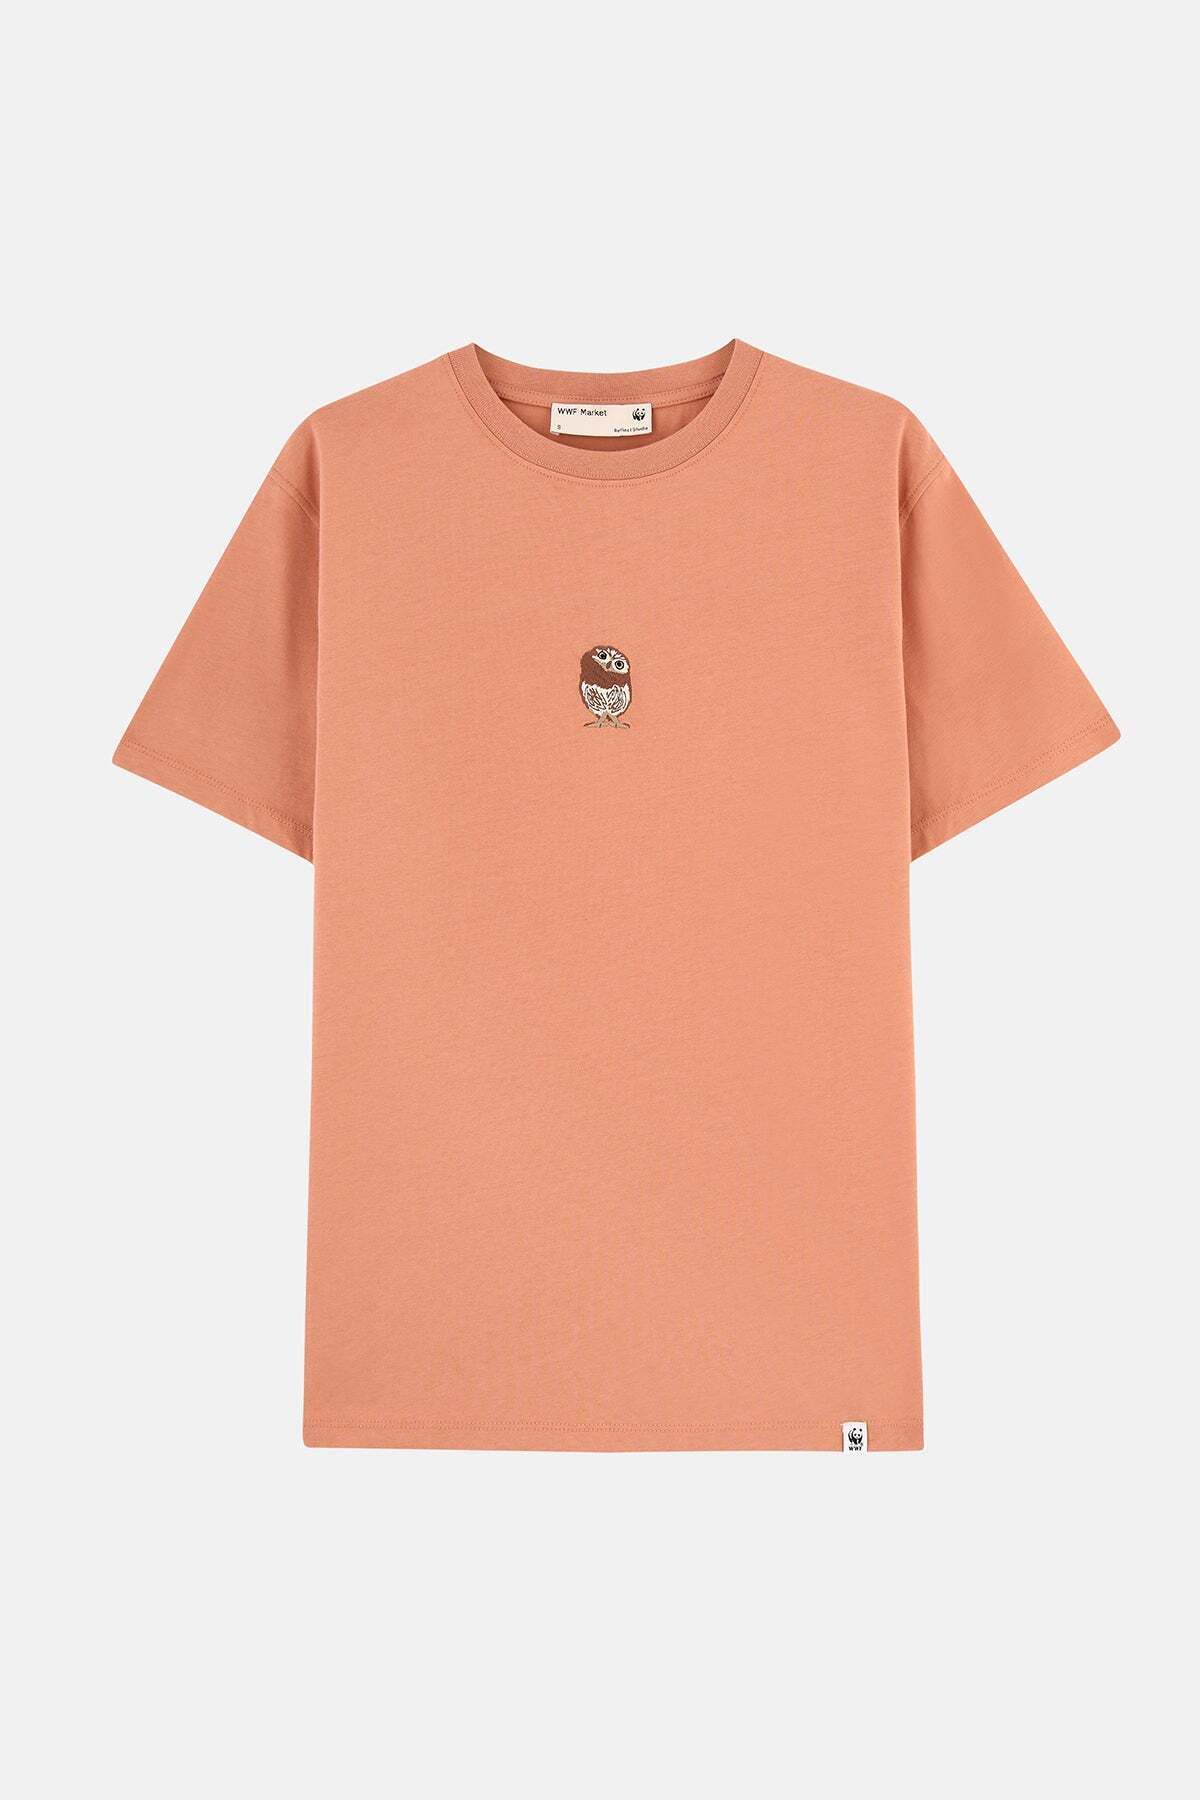 WWF Market Baykuş Supreme T-shirt - Toprak Rengi